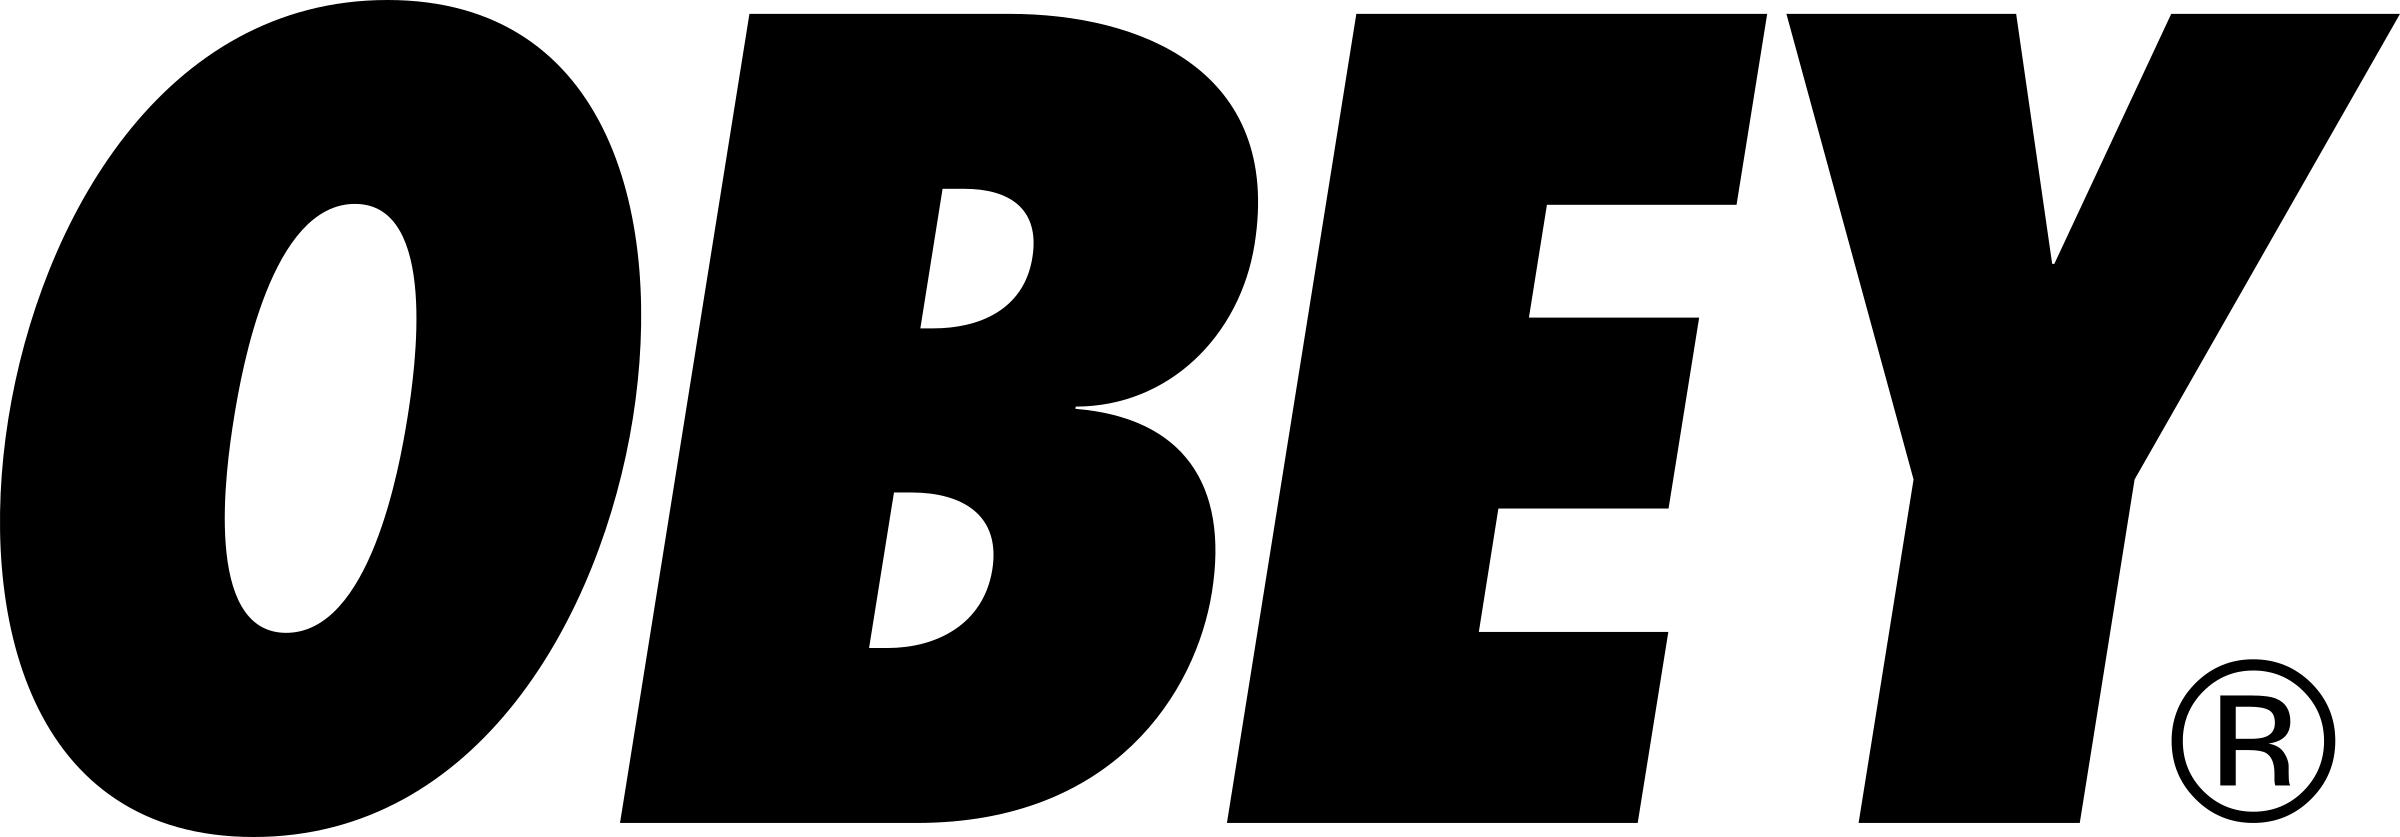 Black Obey Logo - Obey Logo PNG Transparent & SVG Vector - Freebie Supply